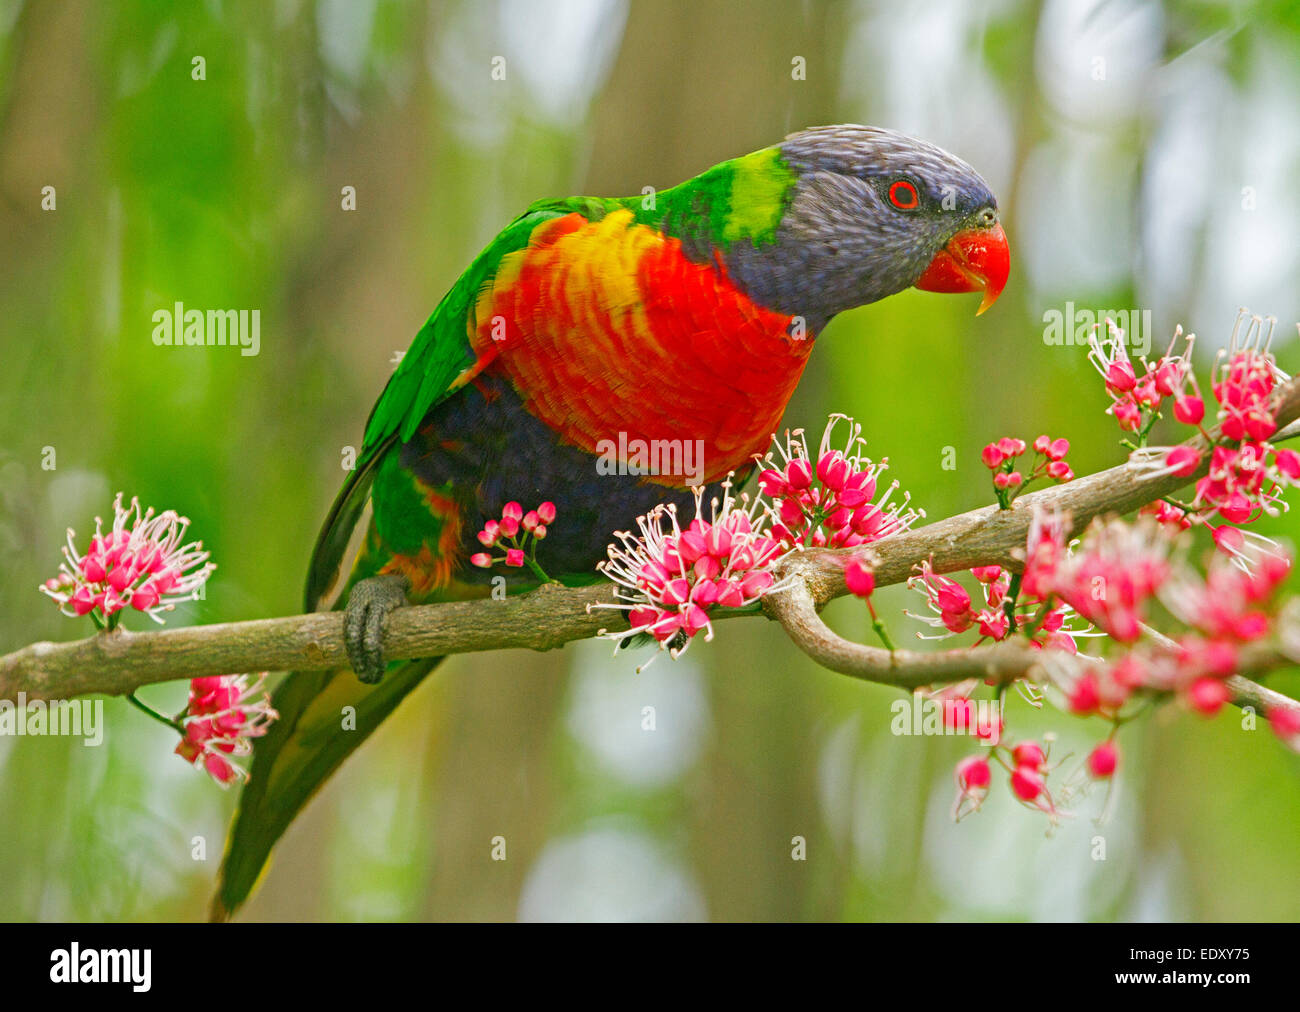 Rainbow lorikeet aux couleurs vives, Australian parrot dans la nature entre les grappes de fleurs roses de l'arbre indigène corkwood, Melicope elleryana Banque D'Images